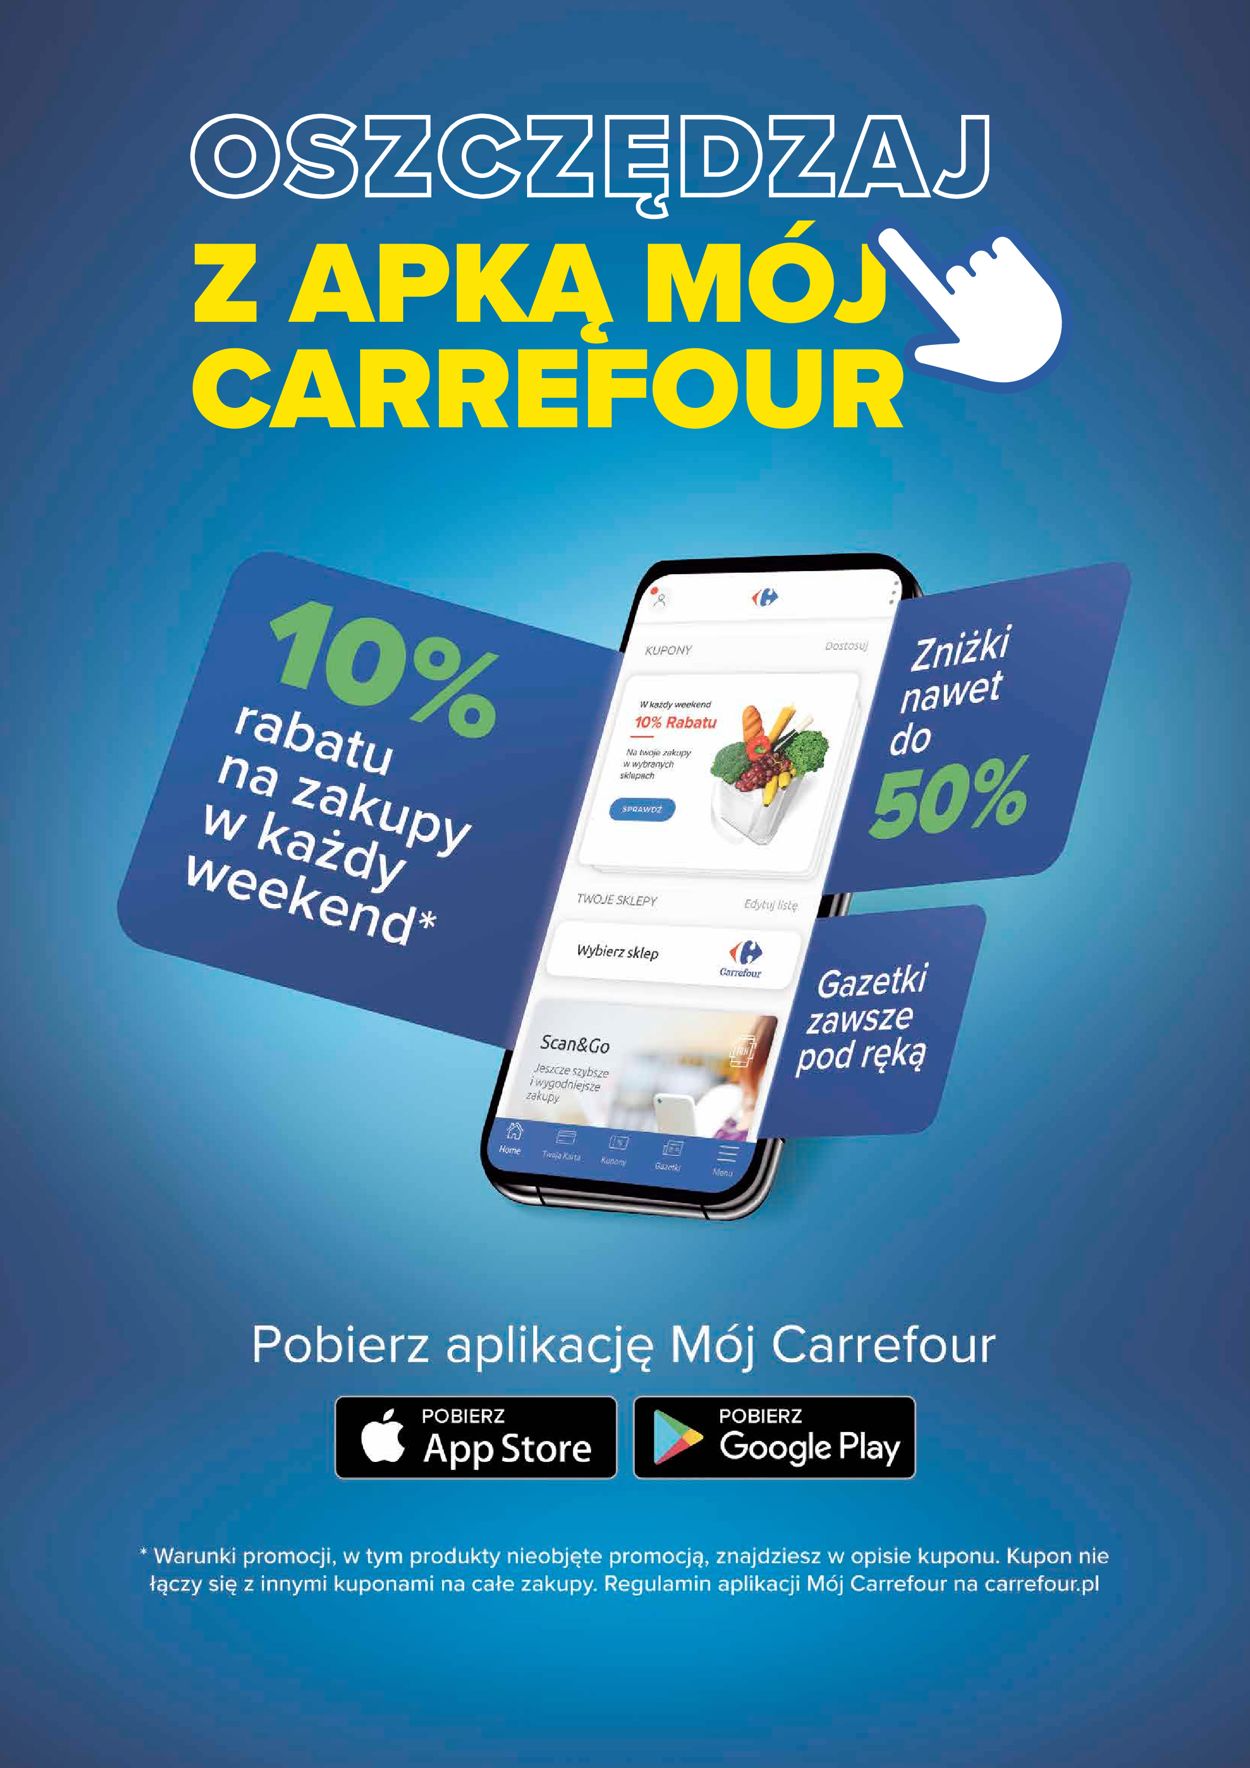 Carrefour Market Gazetka od 08.03.2022